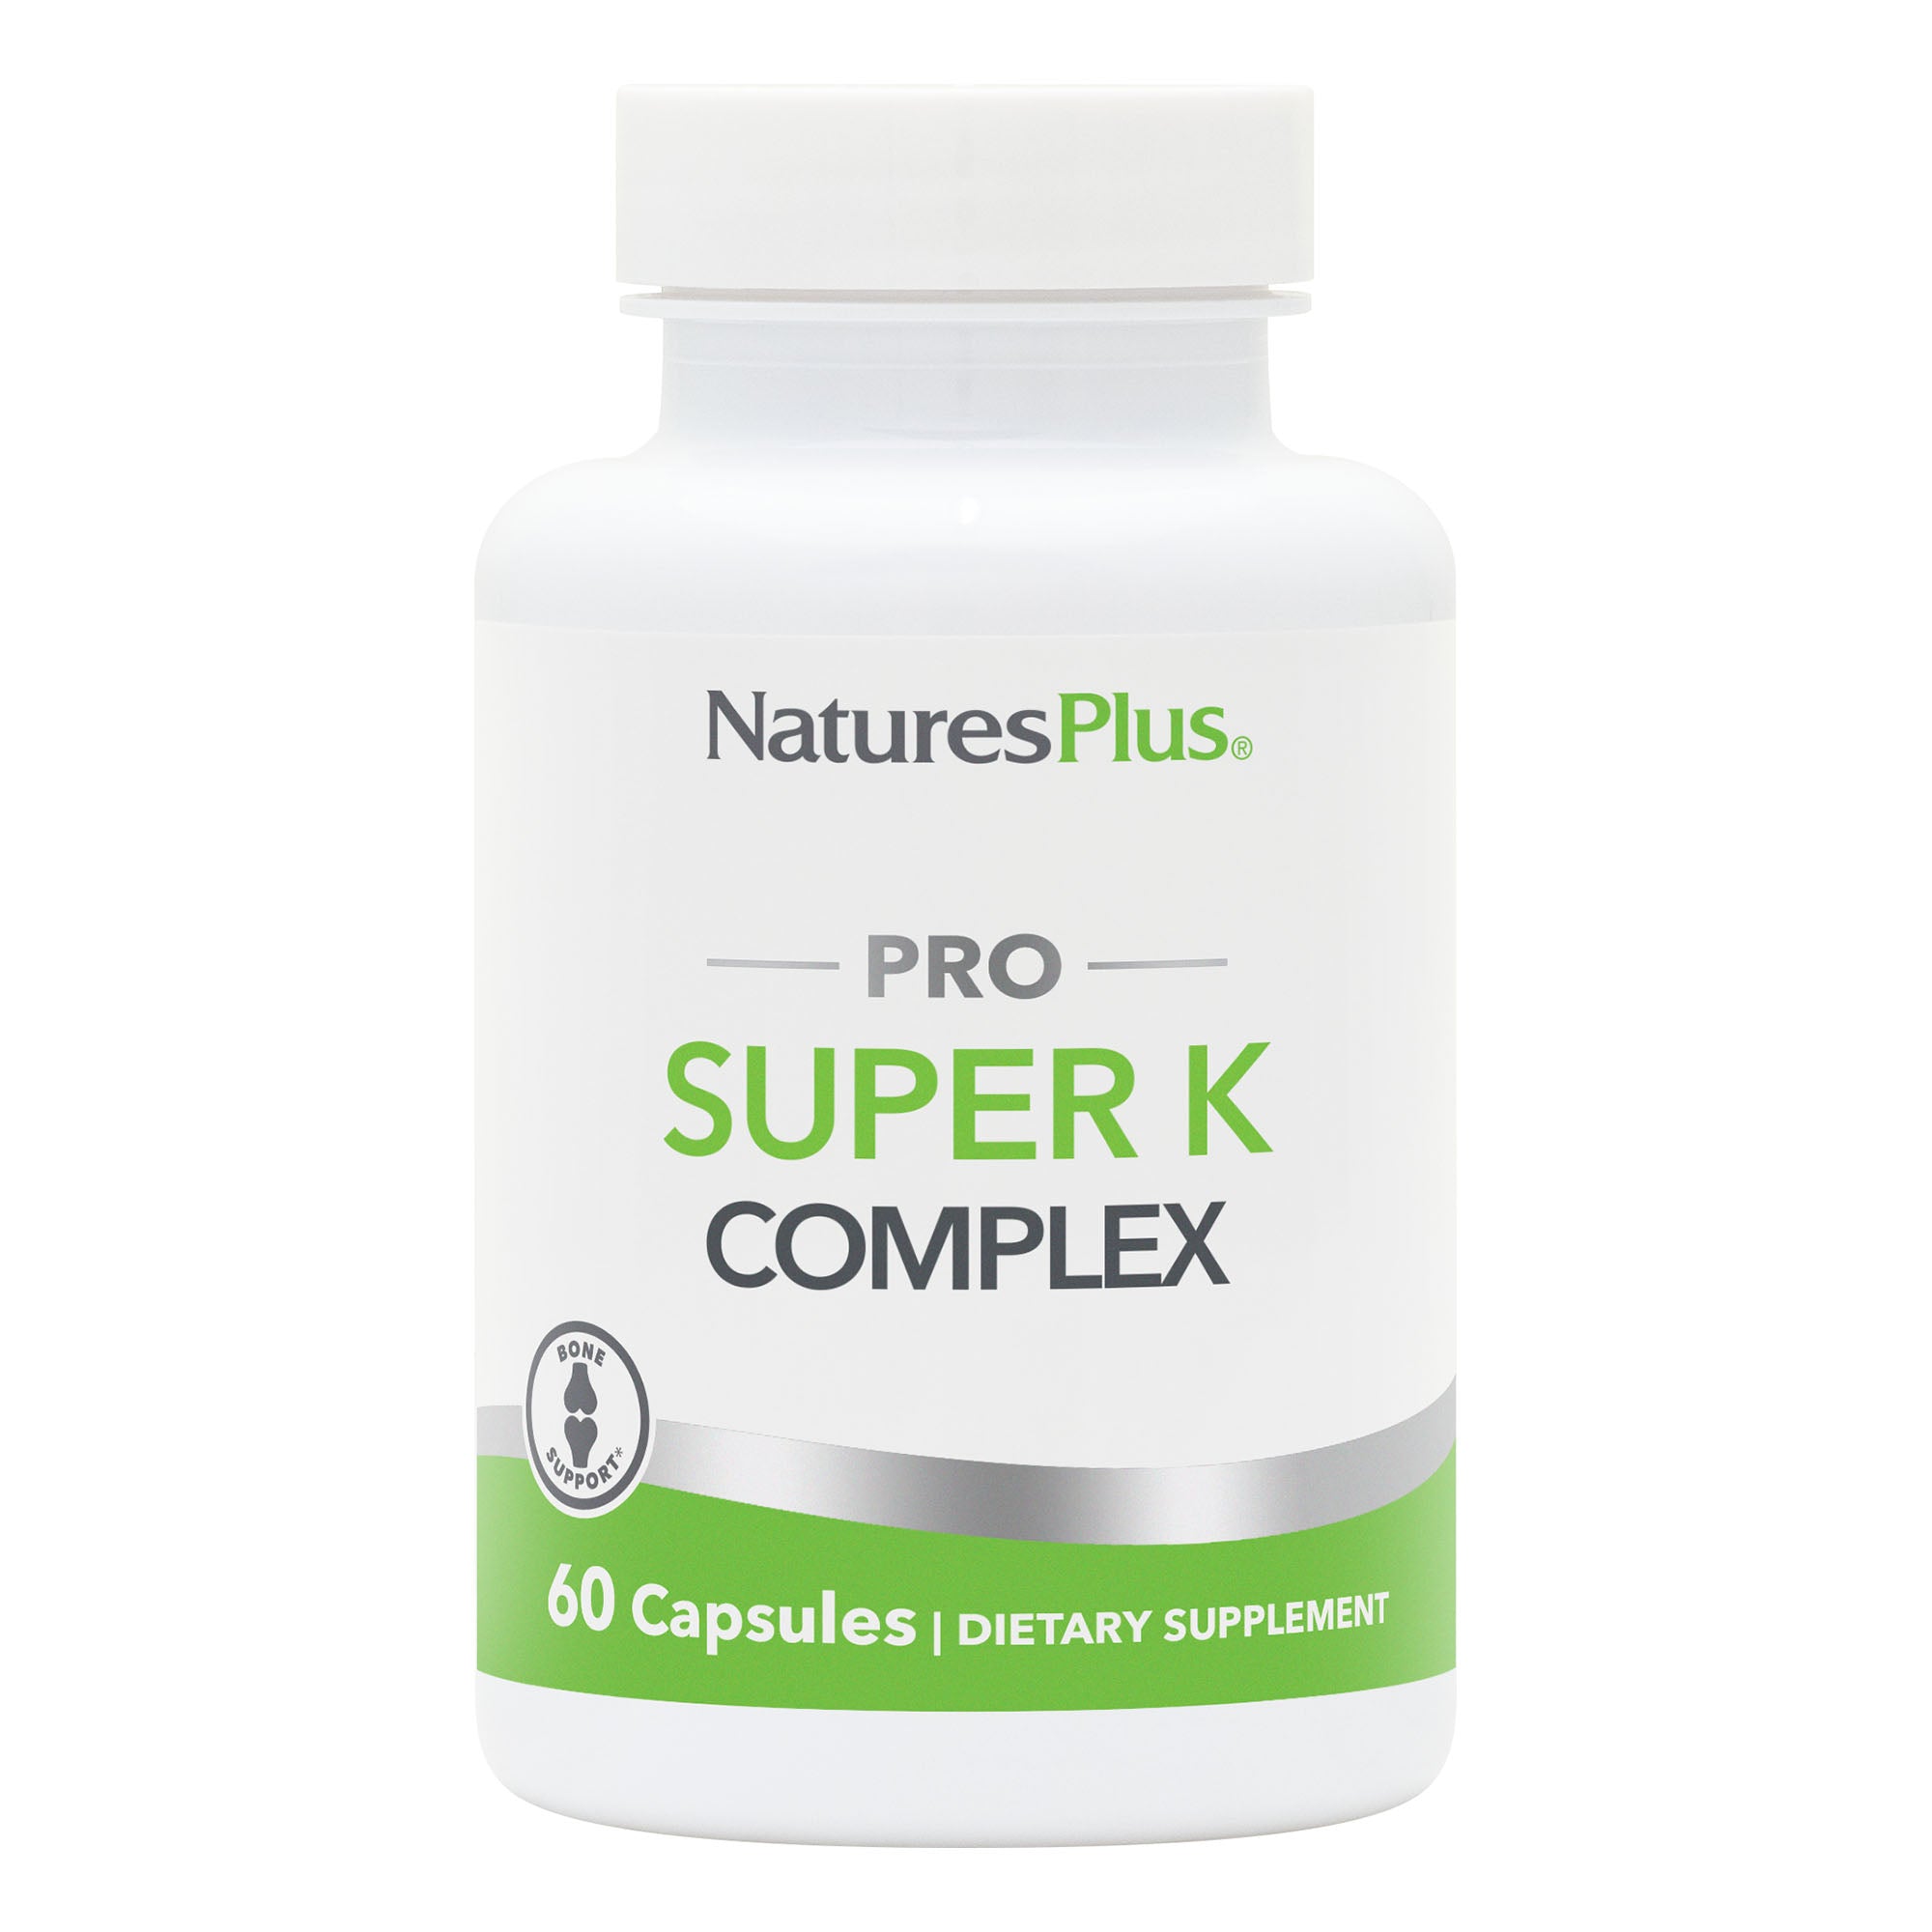 NaturesPlus PRO Super K Complex Capsules